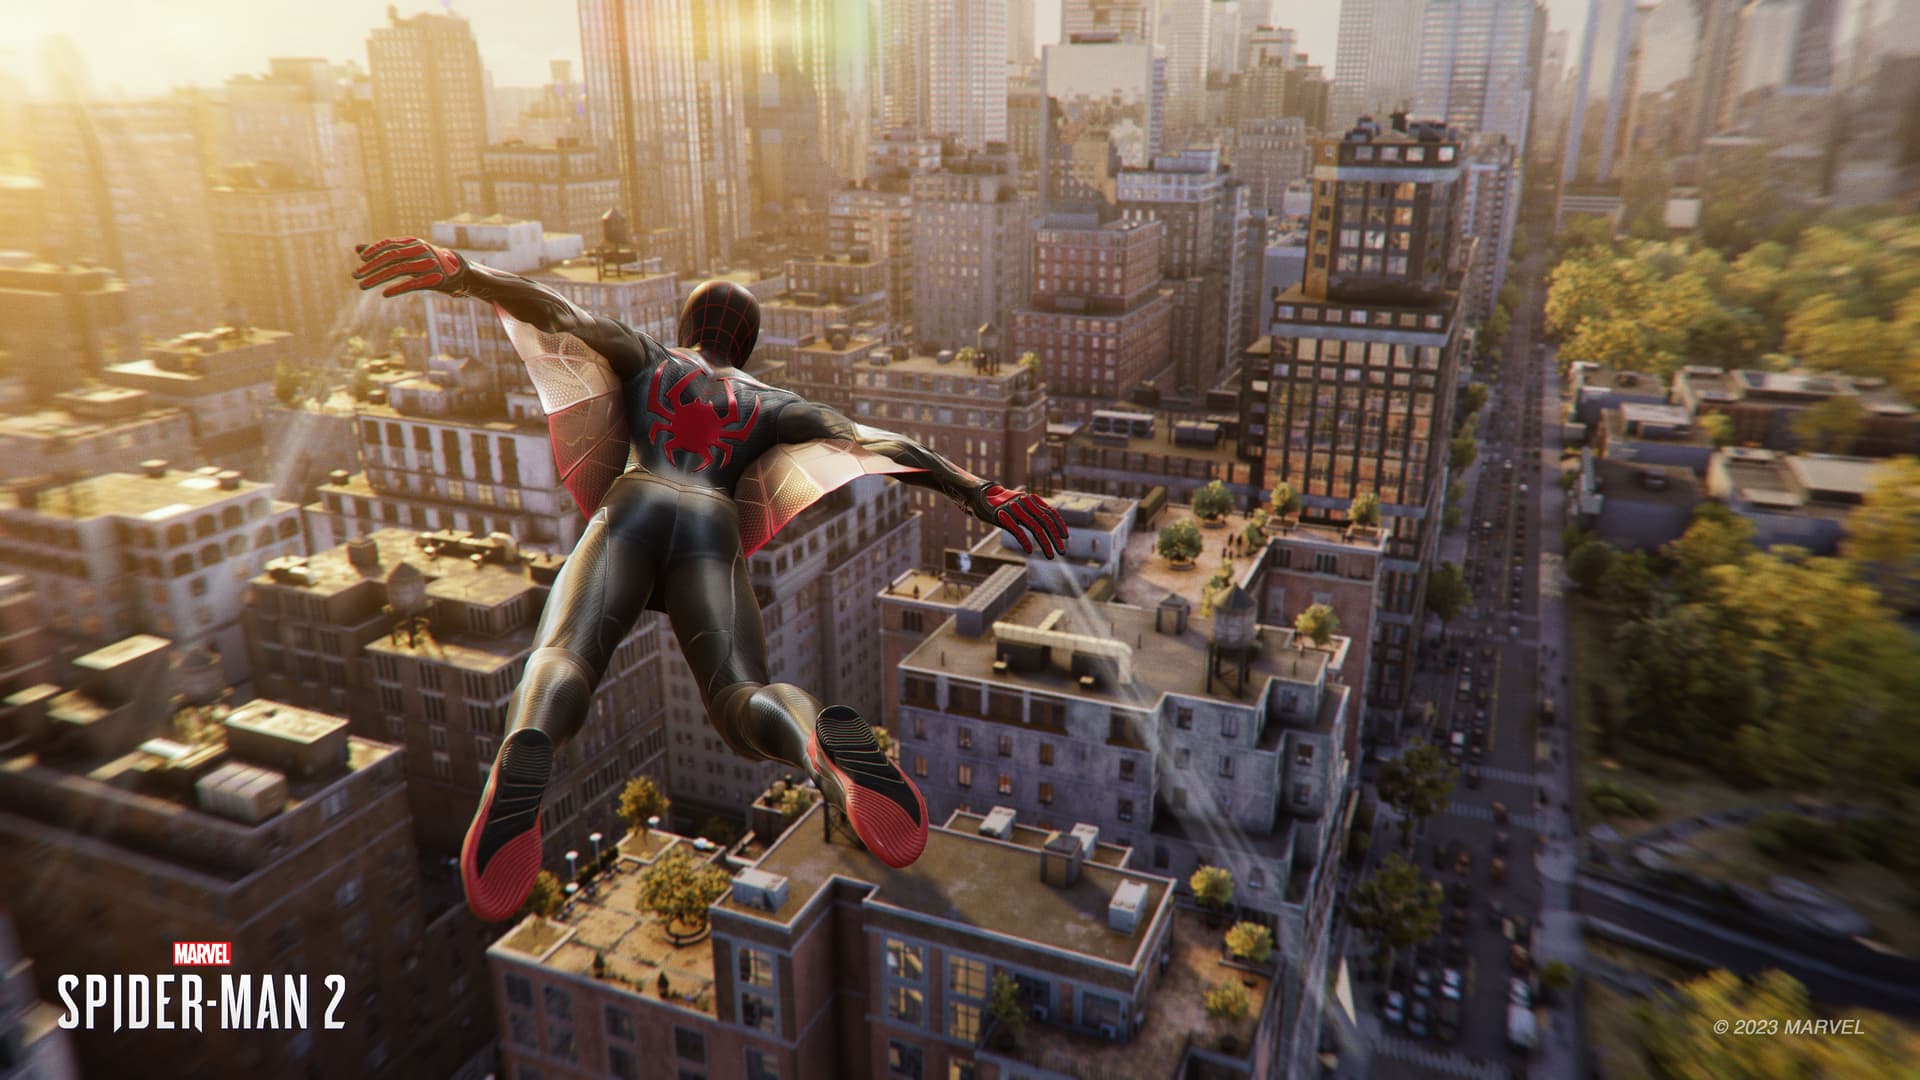 Miles Morales soars over Harlem in Marvel's Spider-Man 2